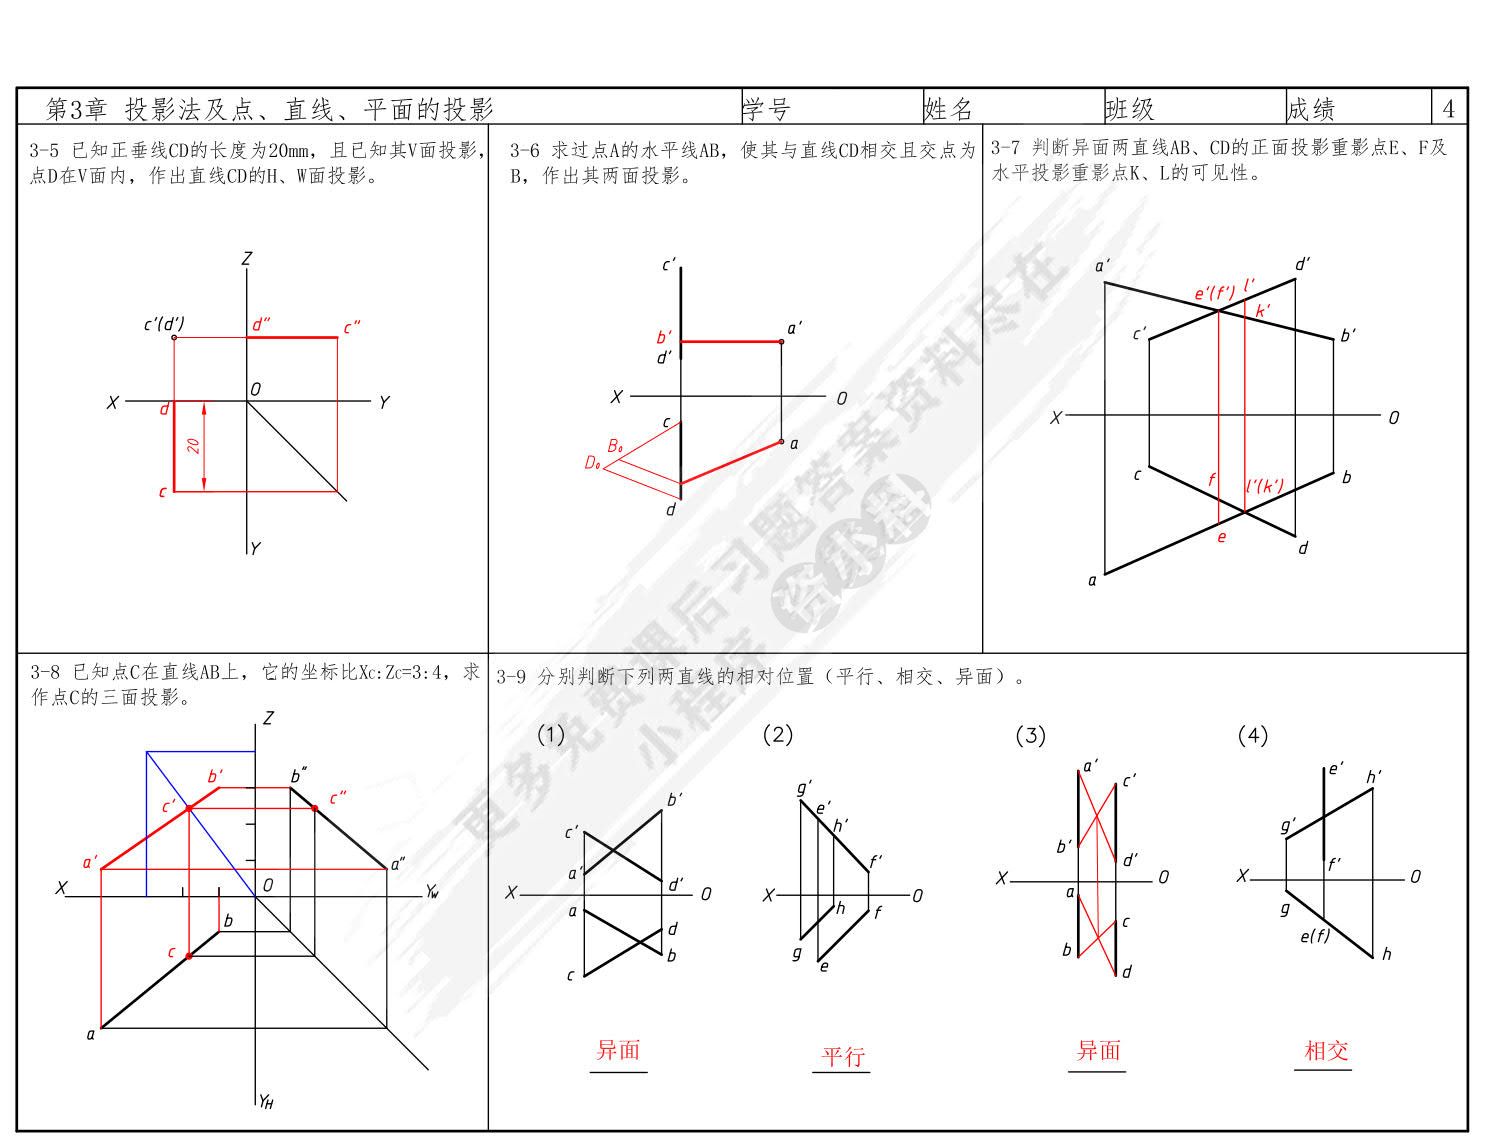 工程图学与CAD基础教程习题集 第2版